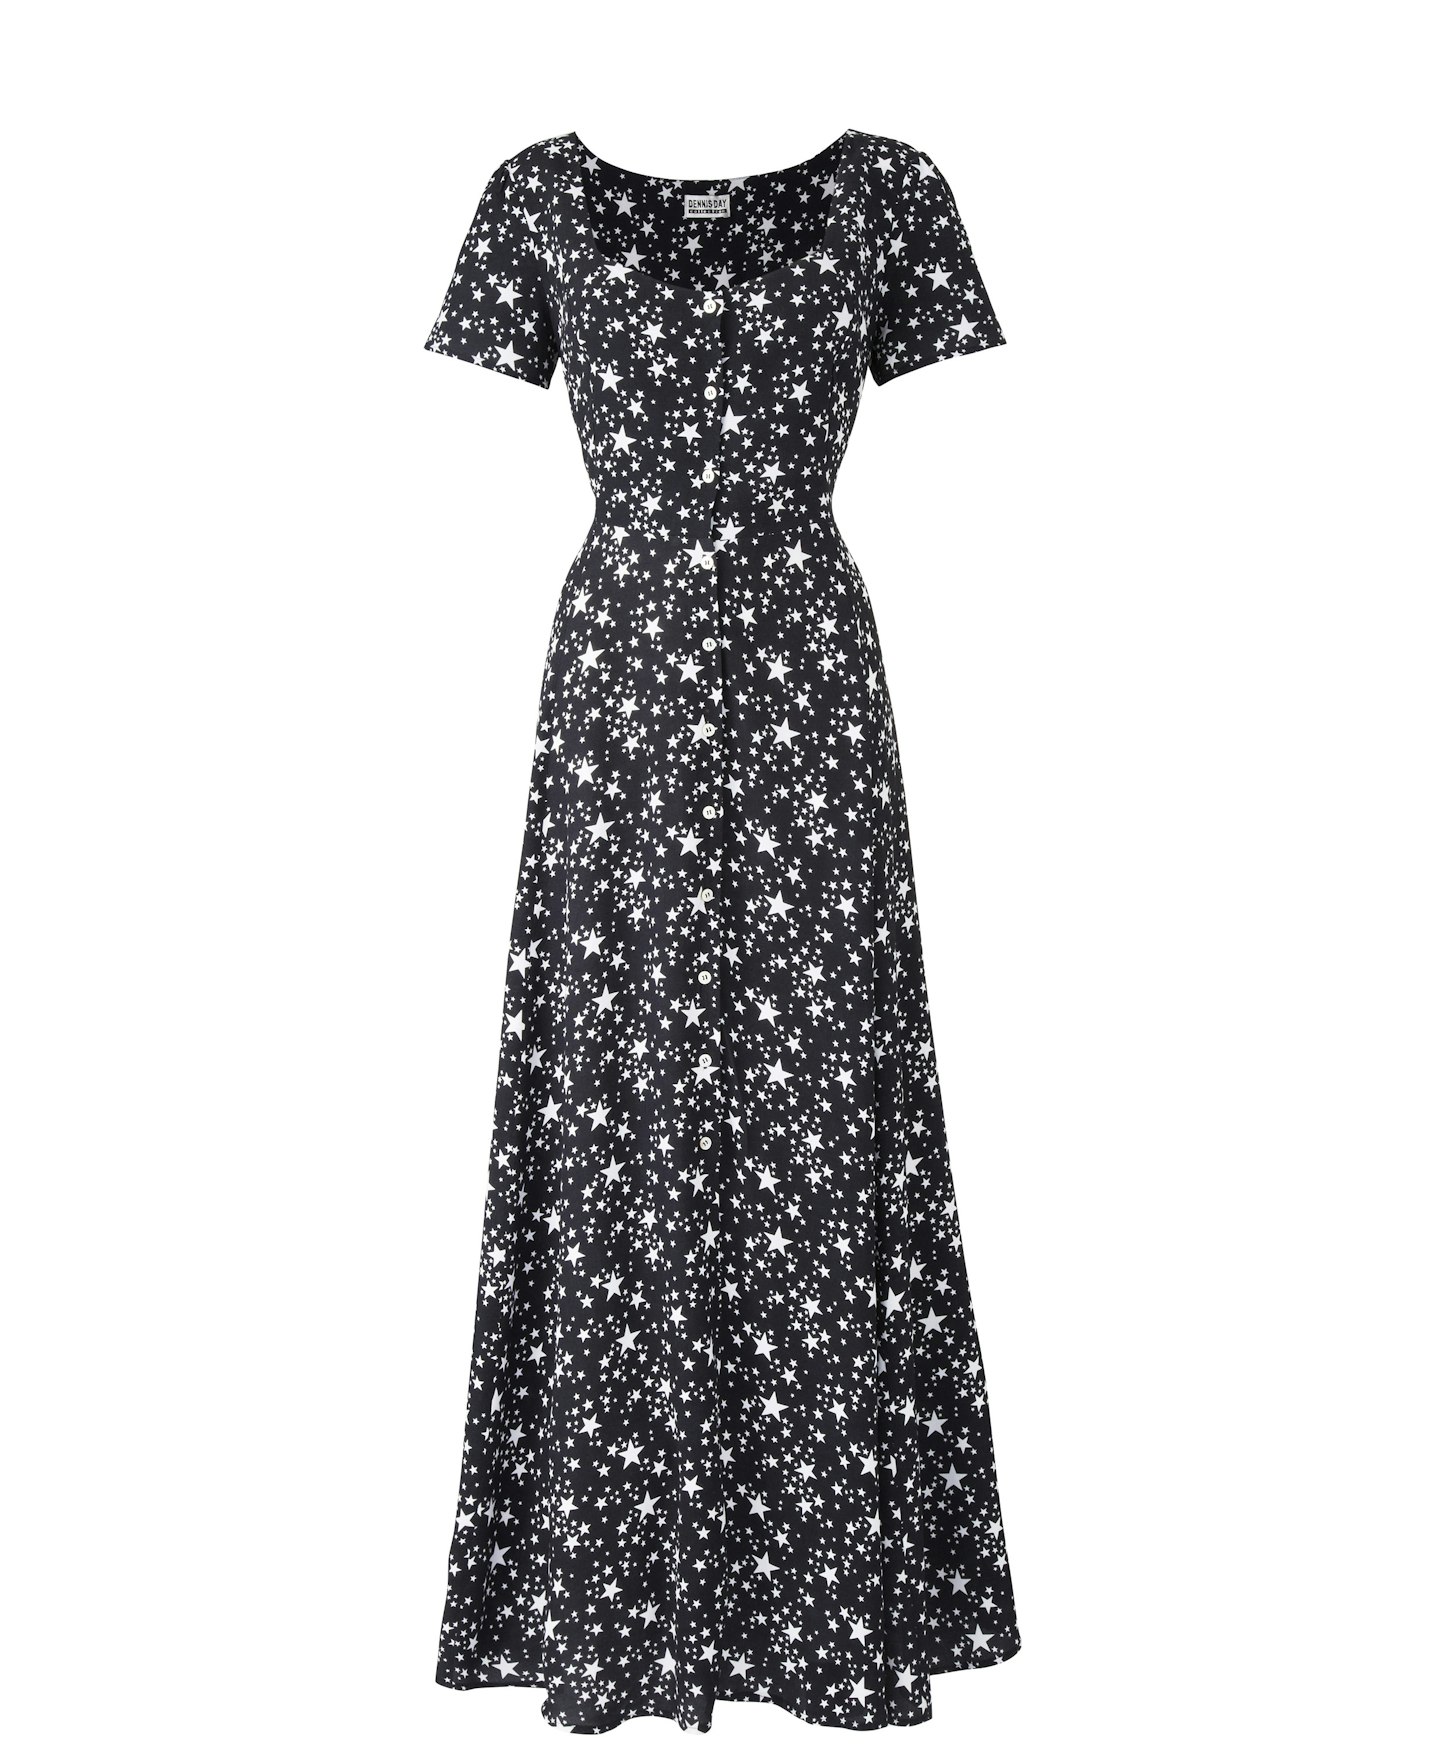 Star print maxi dress £55